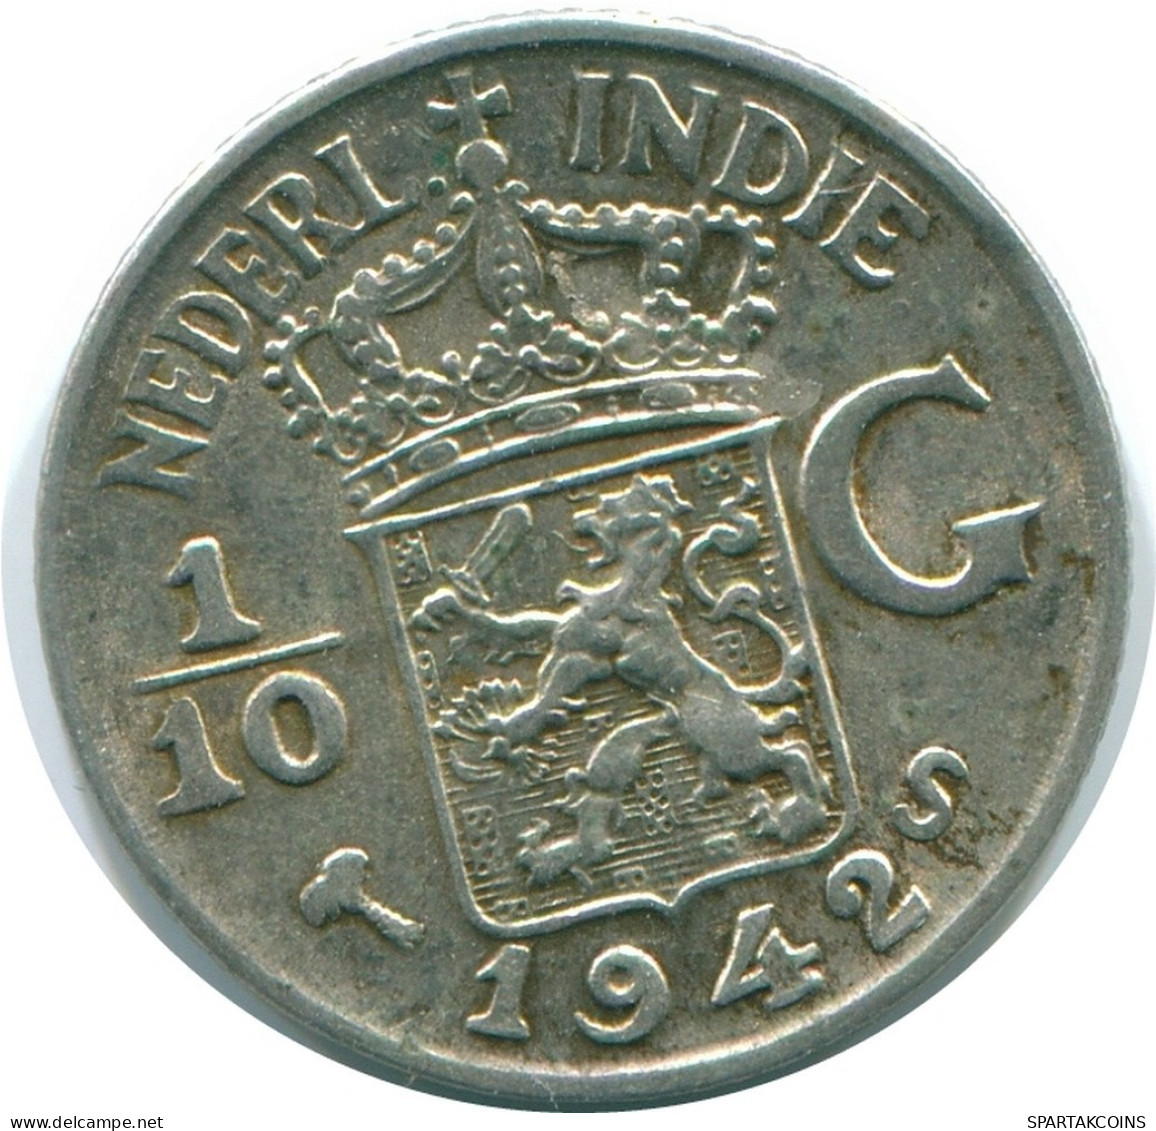 1/10 GULDEN 1942 NIEDERLANDE OSTINDIEN SILBER Koloniale Münze #NL13950.3.D.A - Indie Olandesi